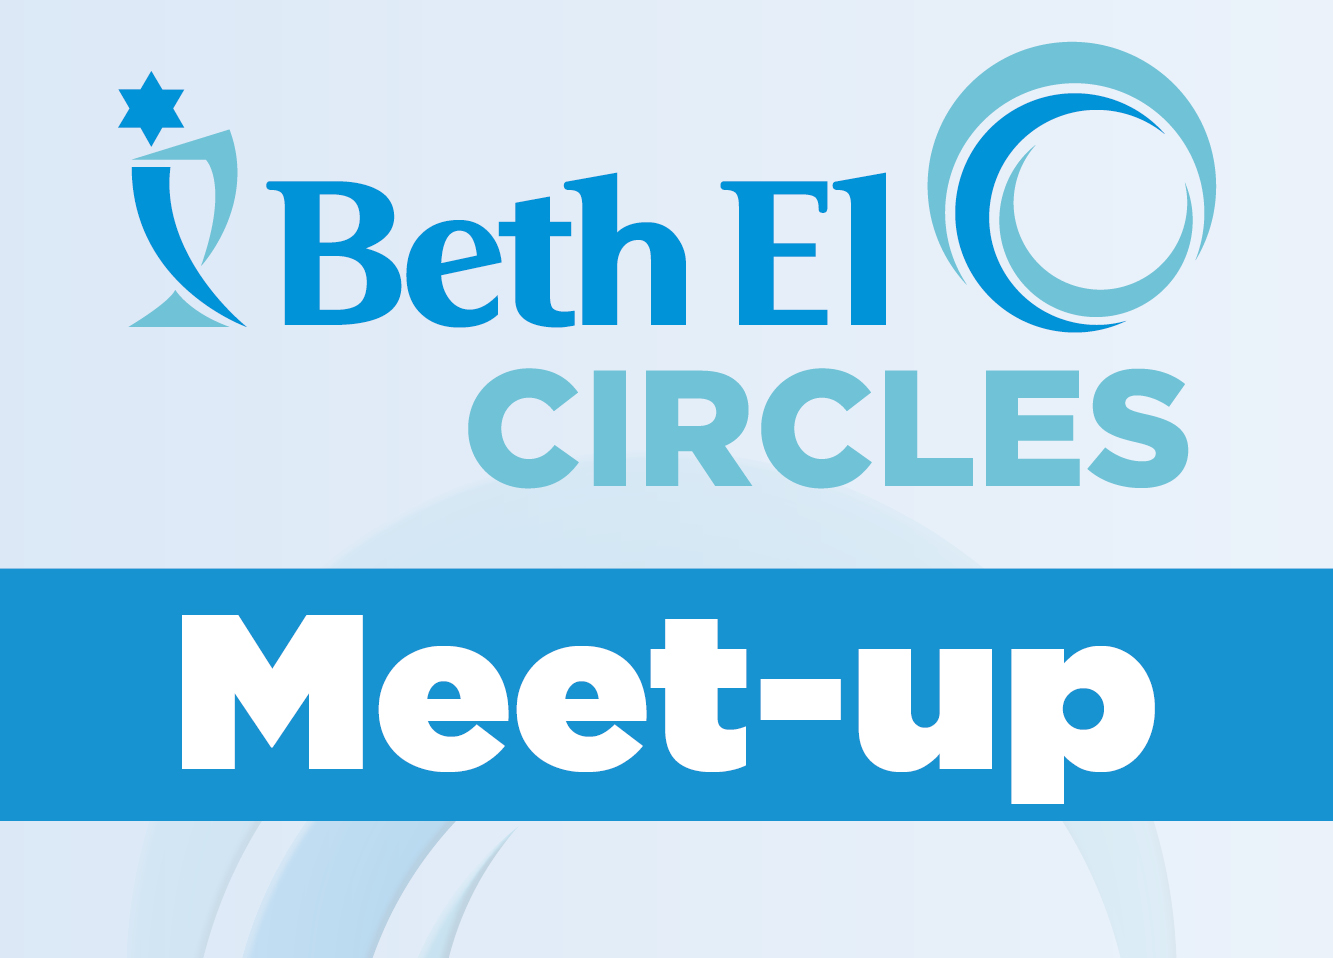 Beth El Circles generic event graphic for Temple Beth El of Boca Raton